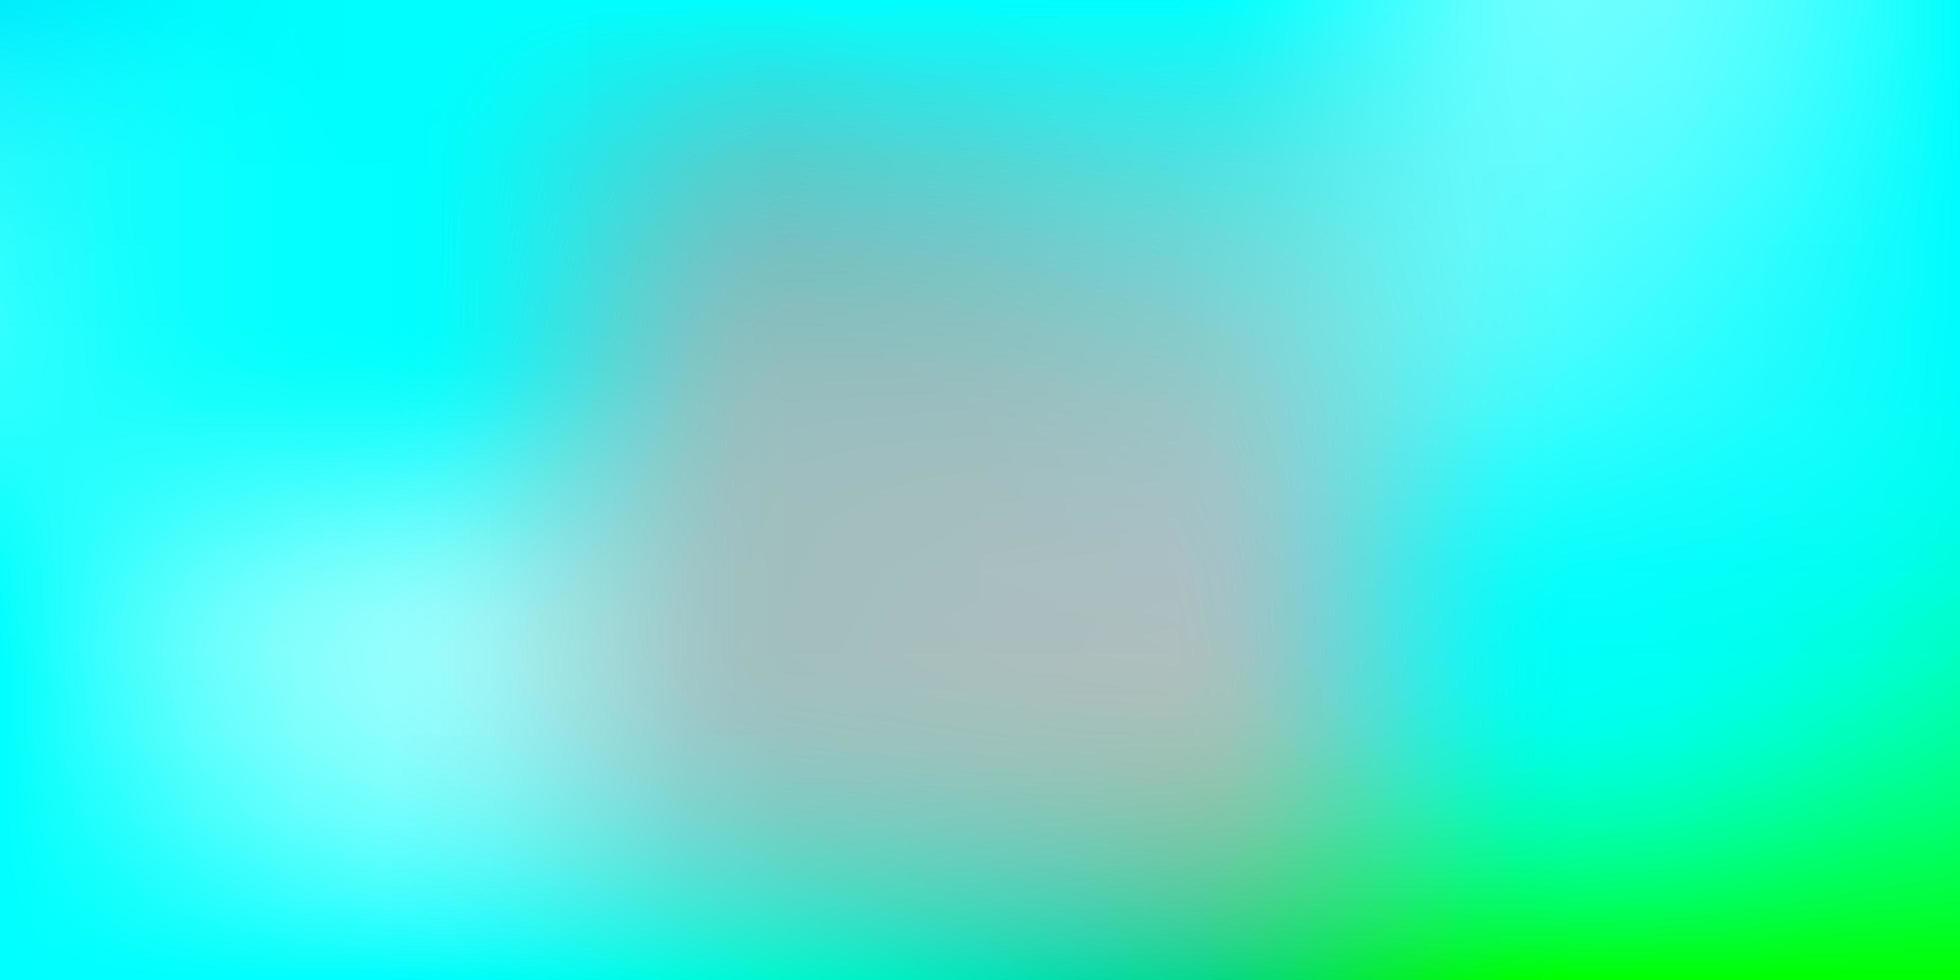 Light Blue, Green blur background. 1663848 Vector Art at Vecteezy